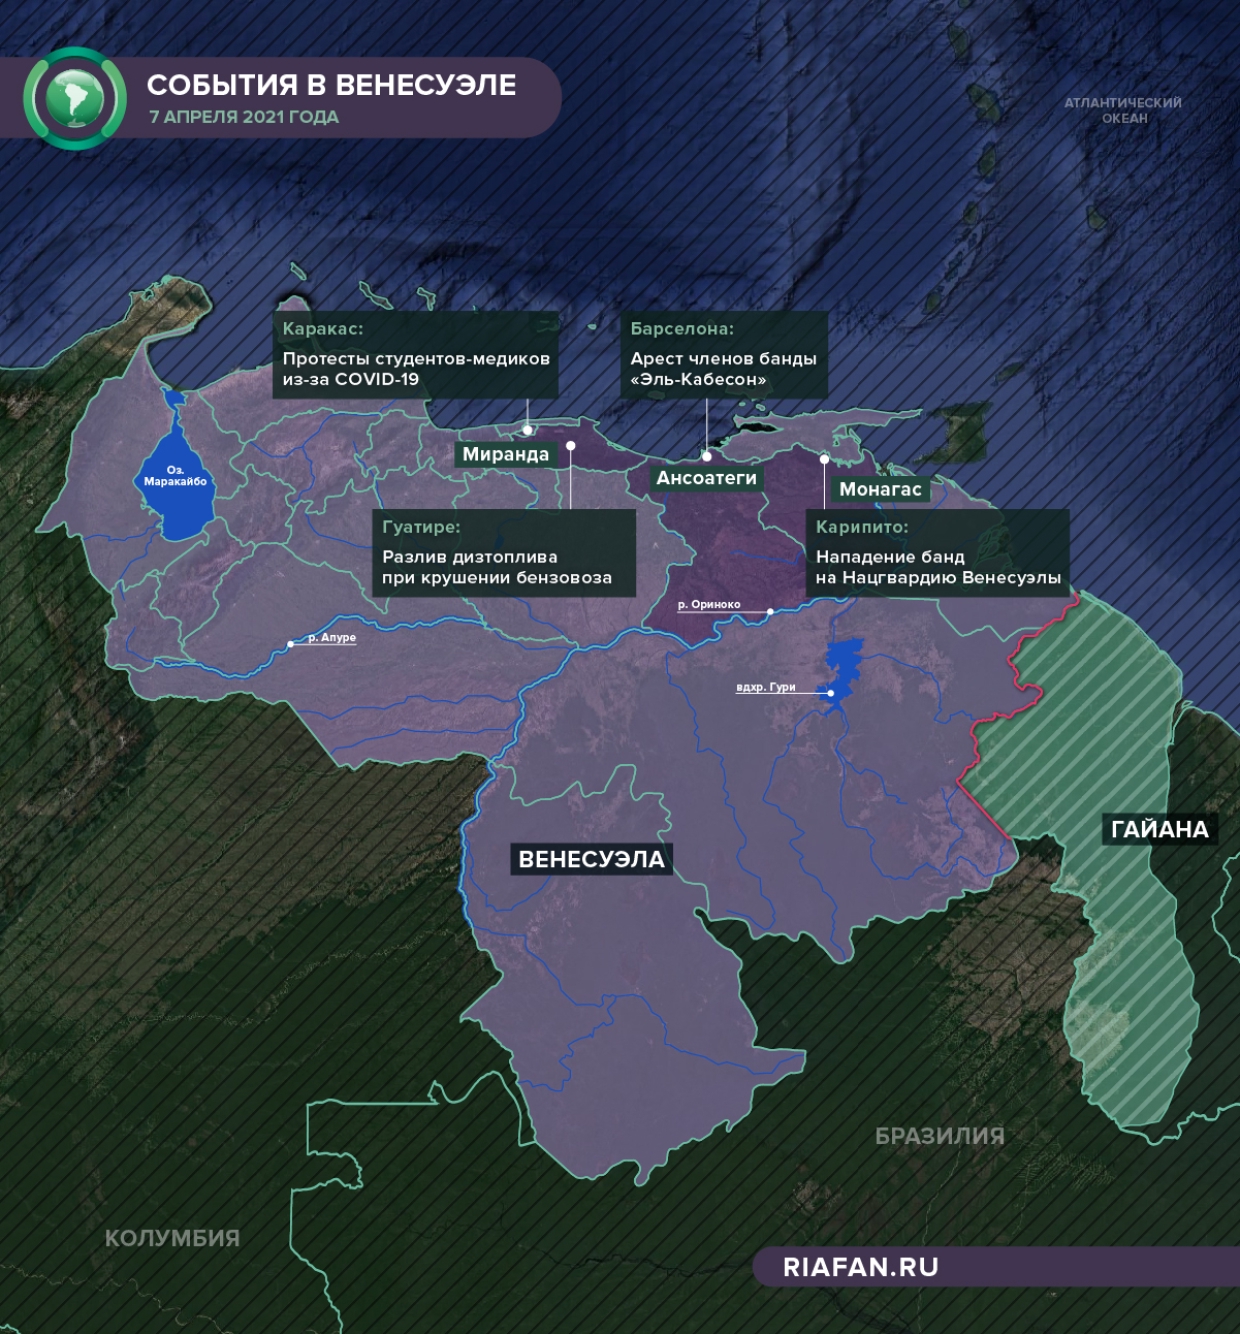 Карта событий в Венесуэле